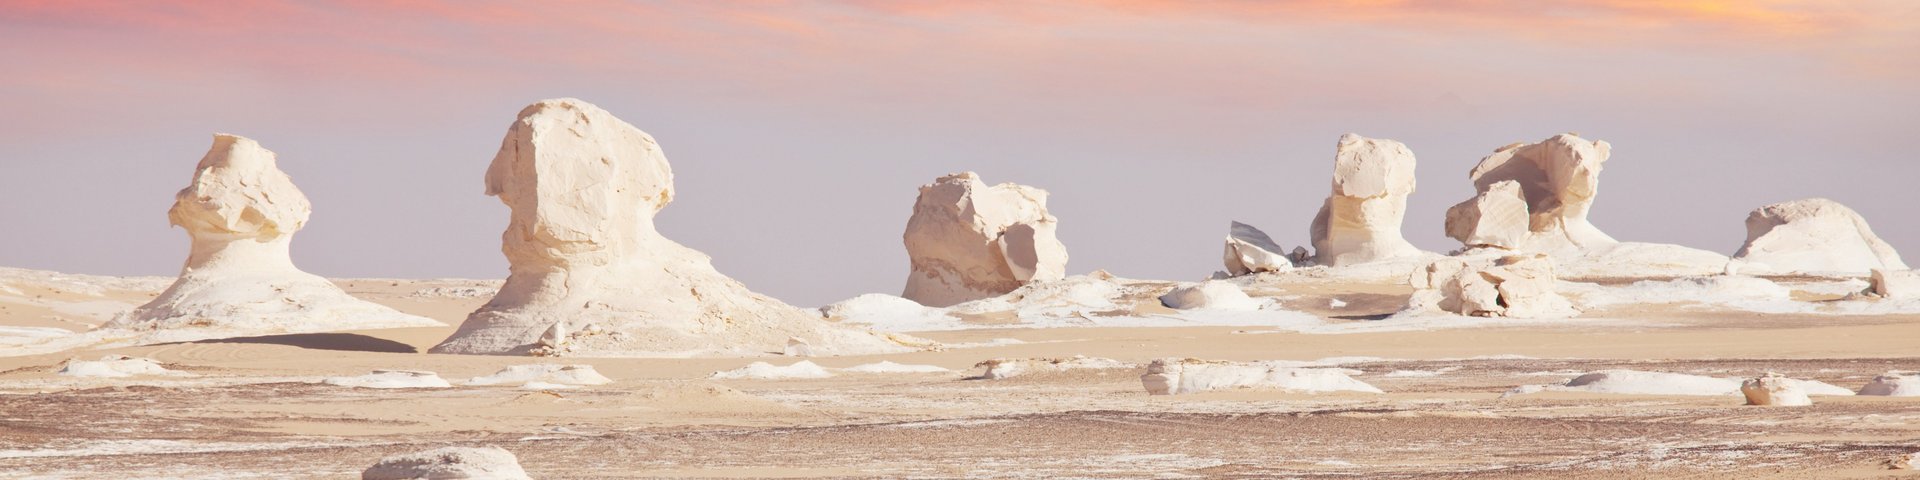 Gesteinsformationen in der Weisse Wüste in Ägypten